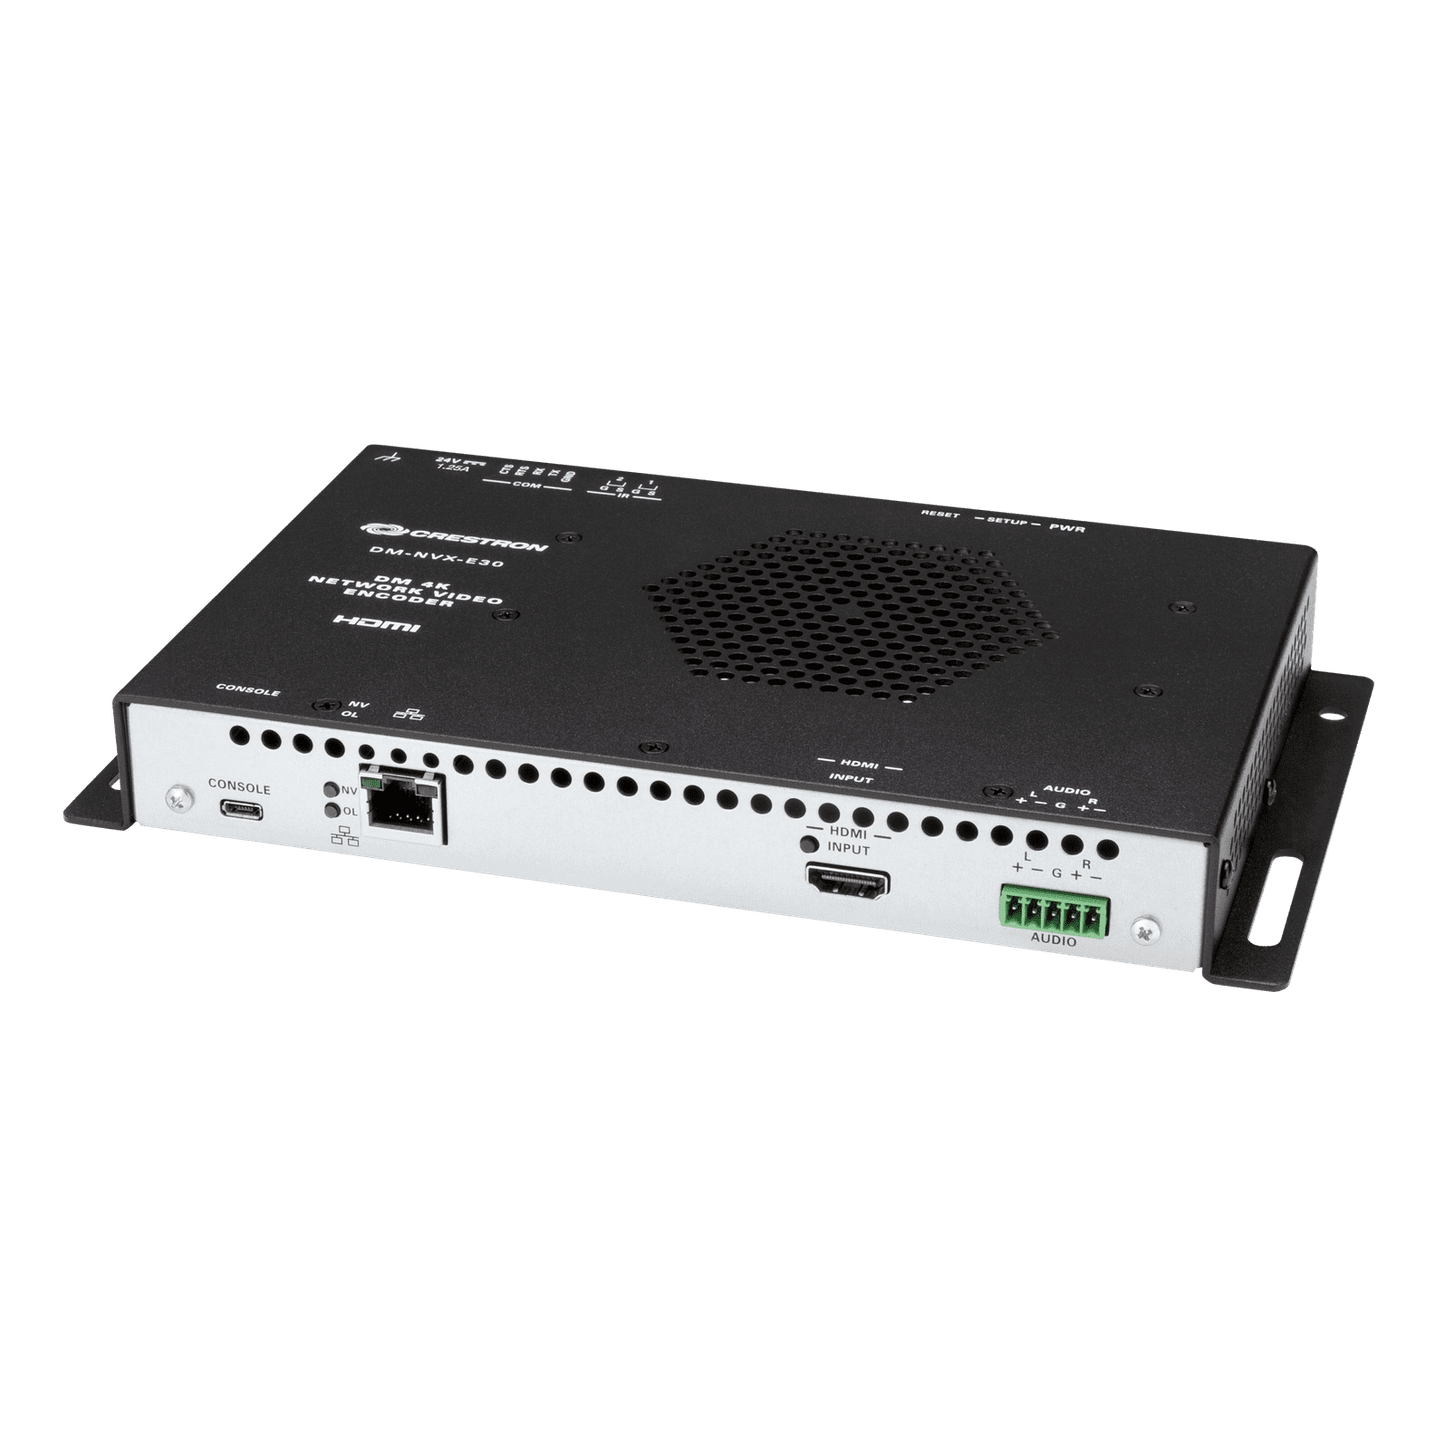 Crestron DM NVX® 4K60 4:4:4 HDR Network AV Encoder - vnetwork